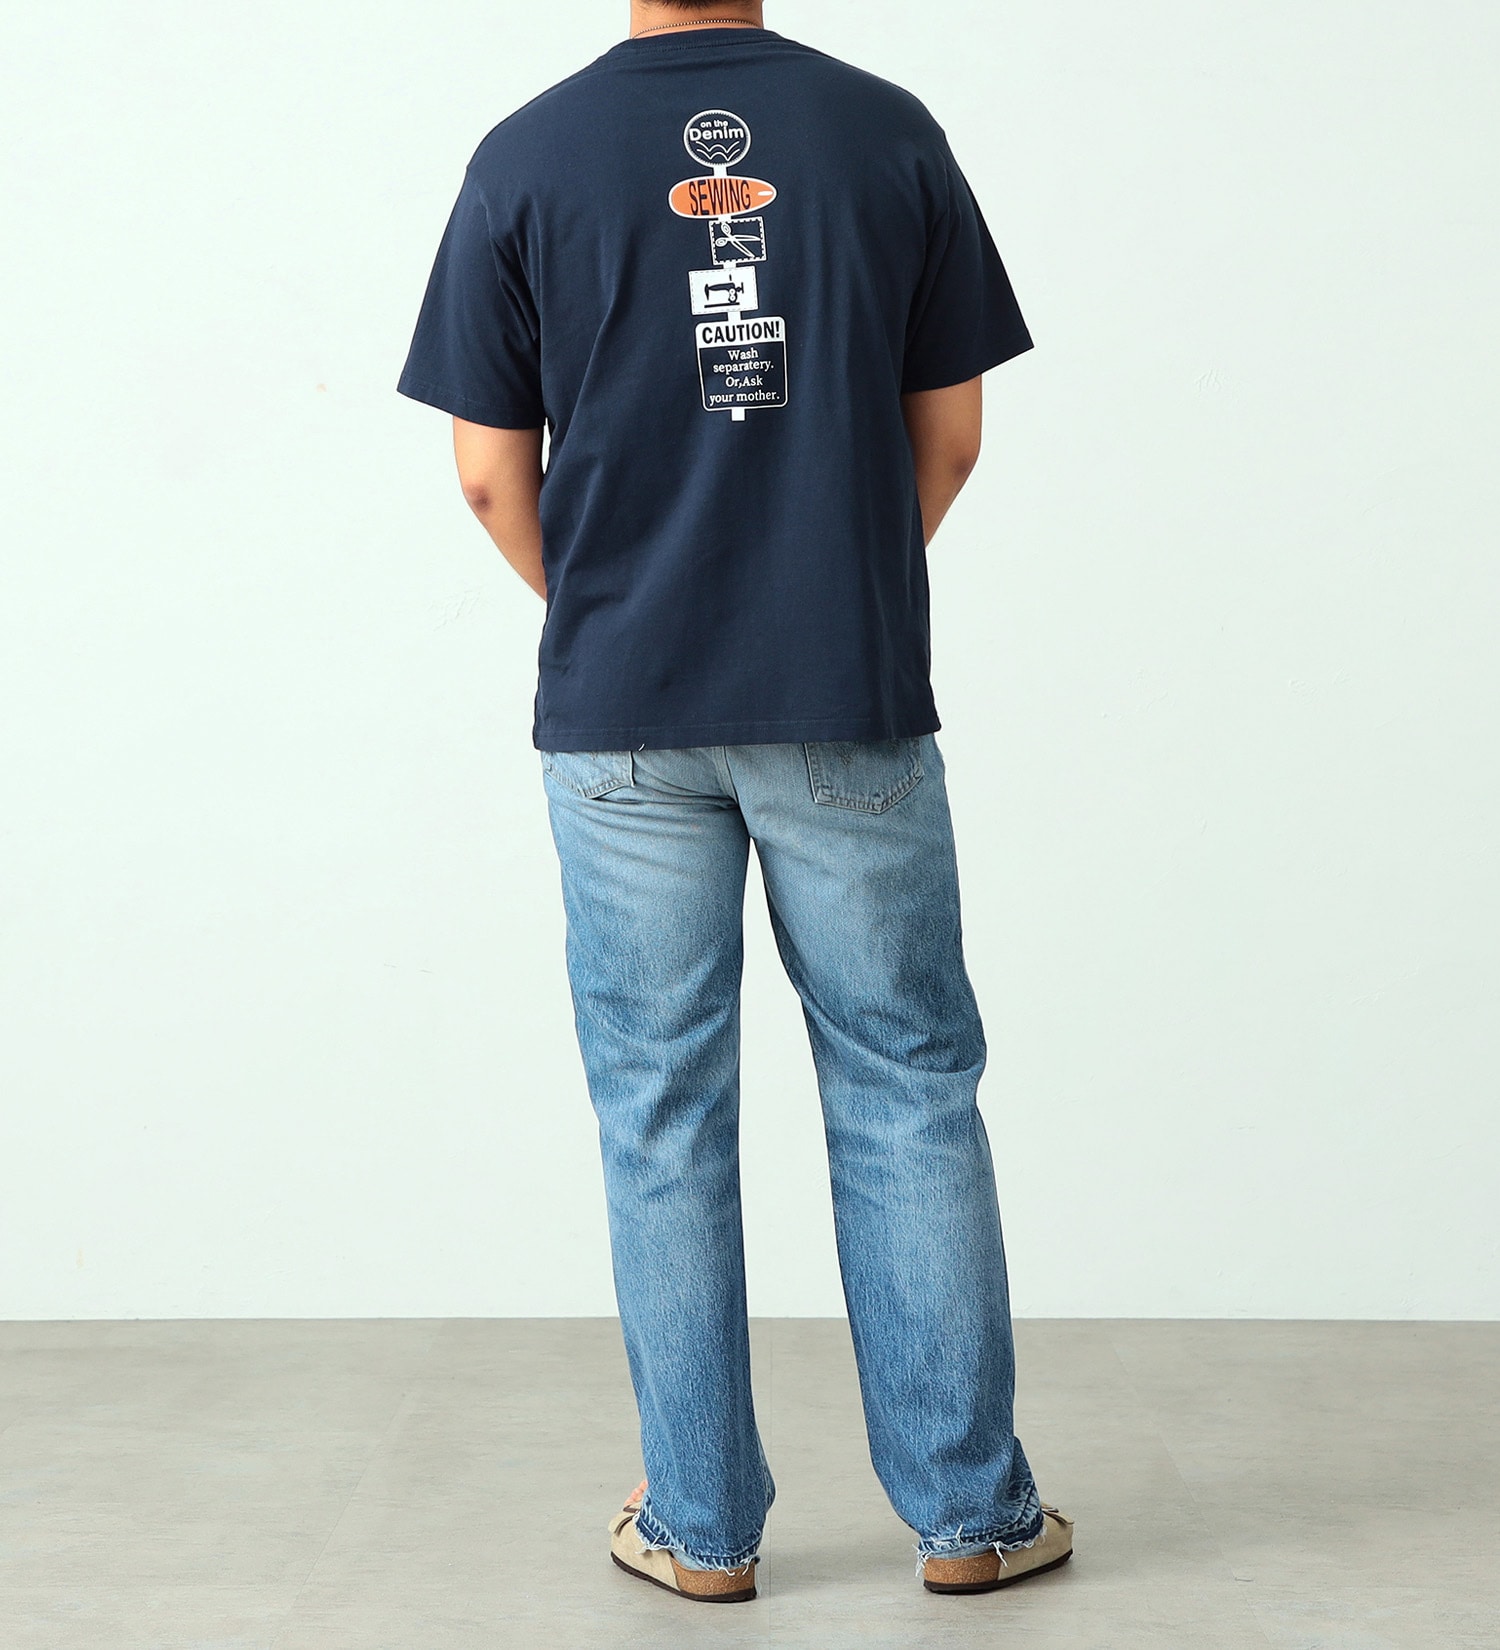 EDWIN(エドウイン)のイラストバックプリントTシャツ【アウトレット店舗・WEB限定】|トップス/Tシャツ/カットソー/メンズ|ネイビー